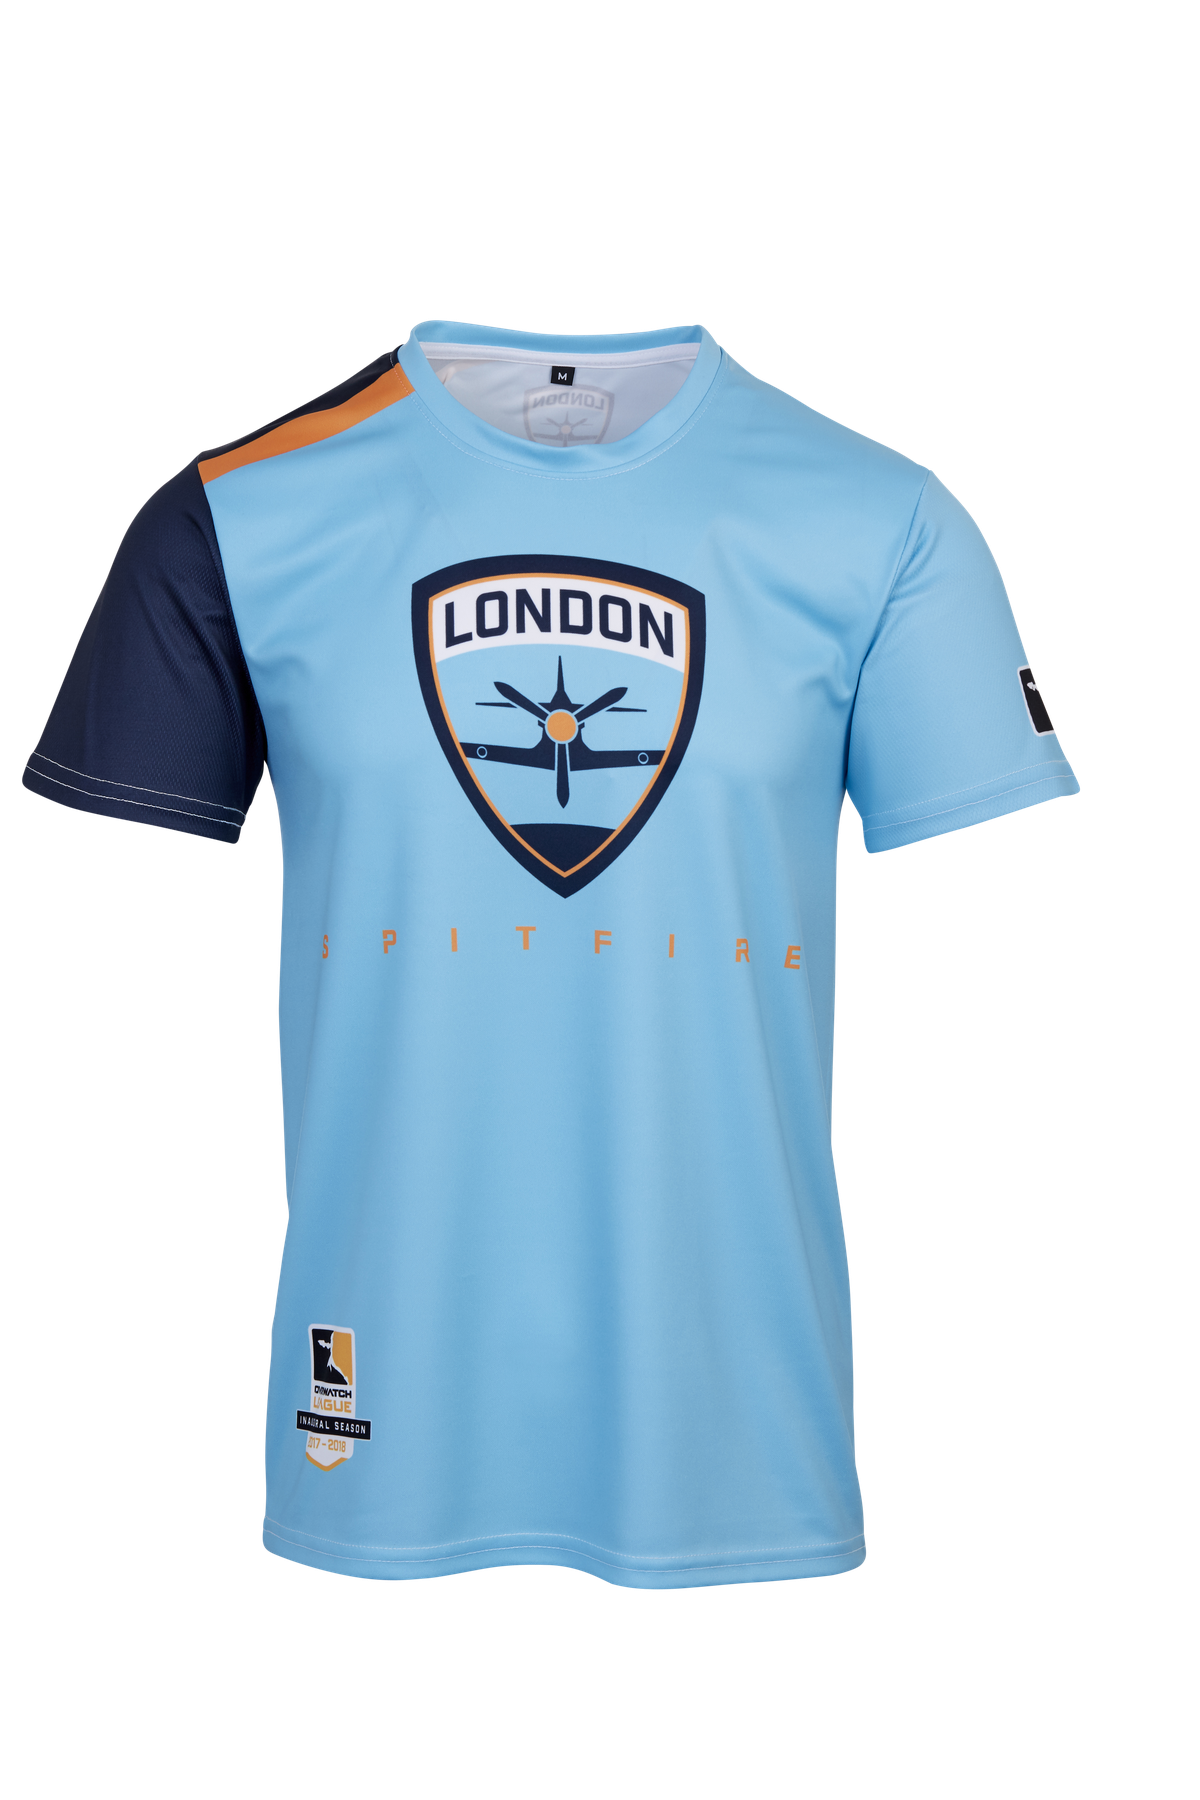 London Spitfire jersey